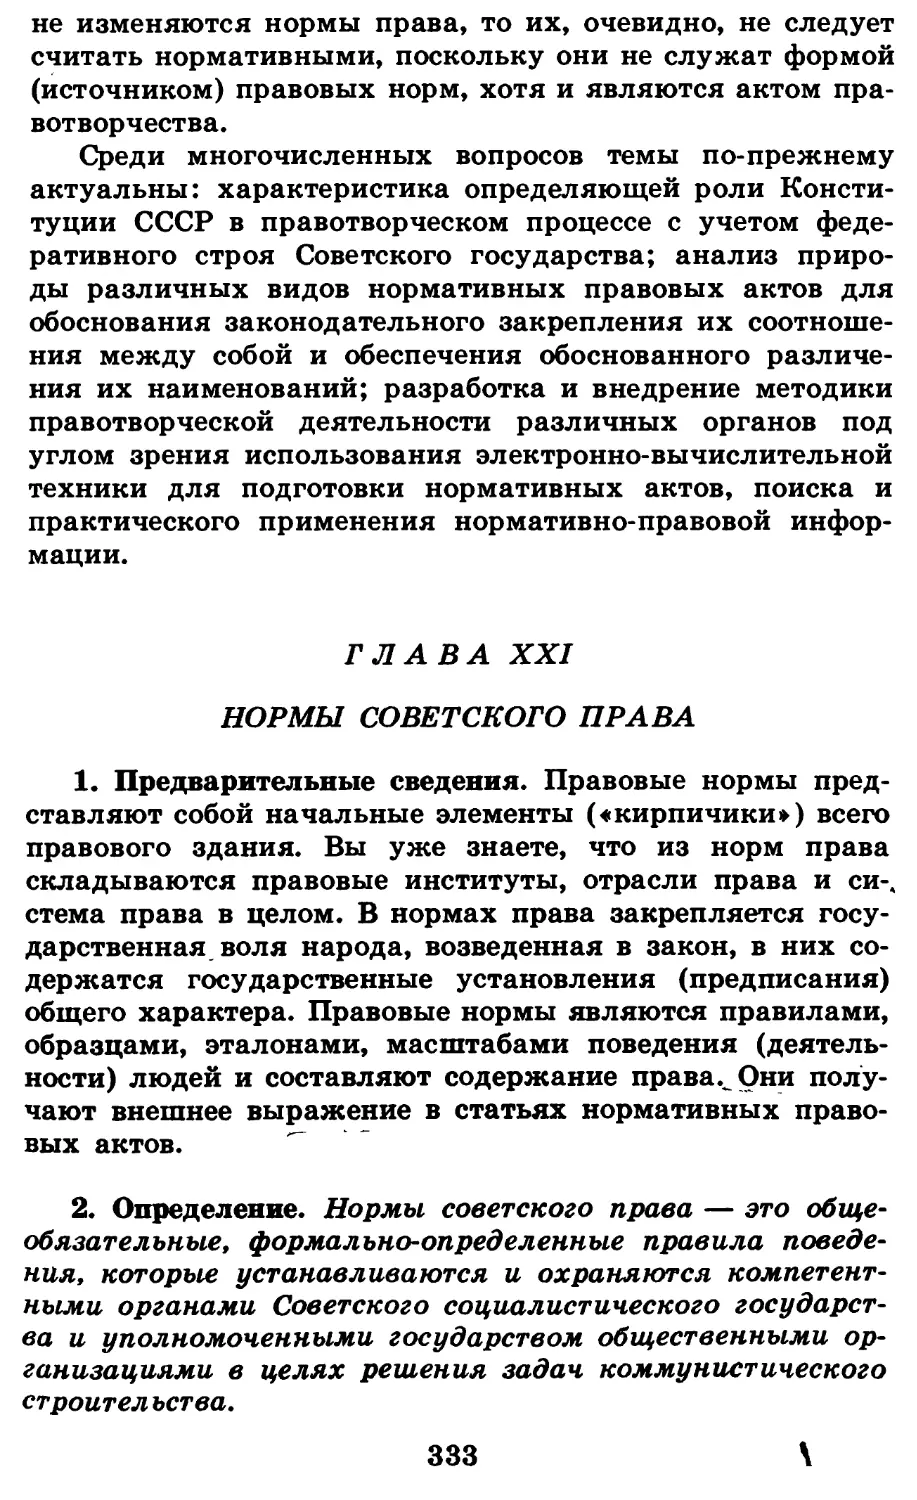 Глава XXI. Нормы советского права